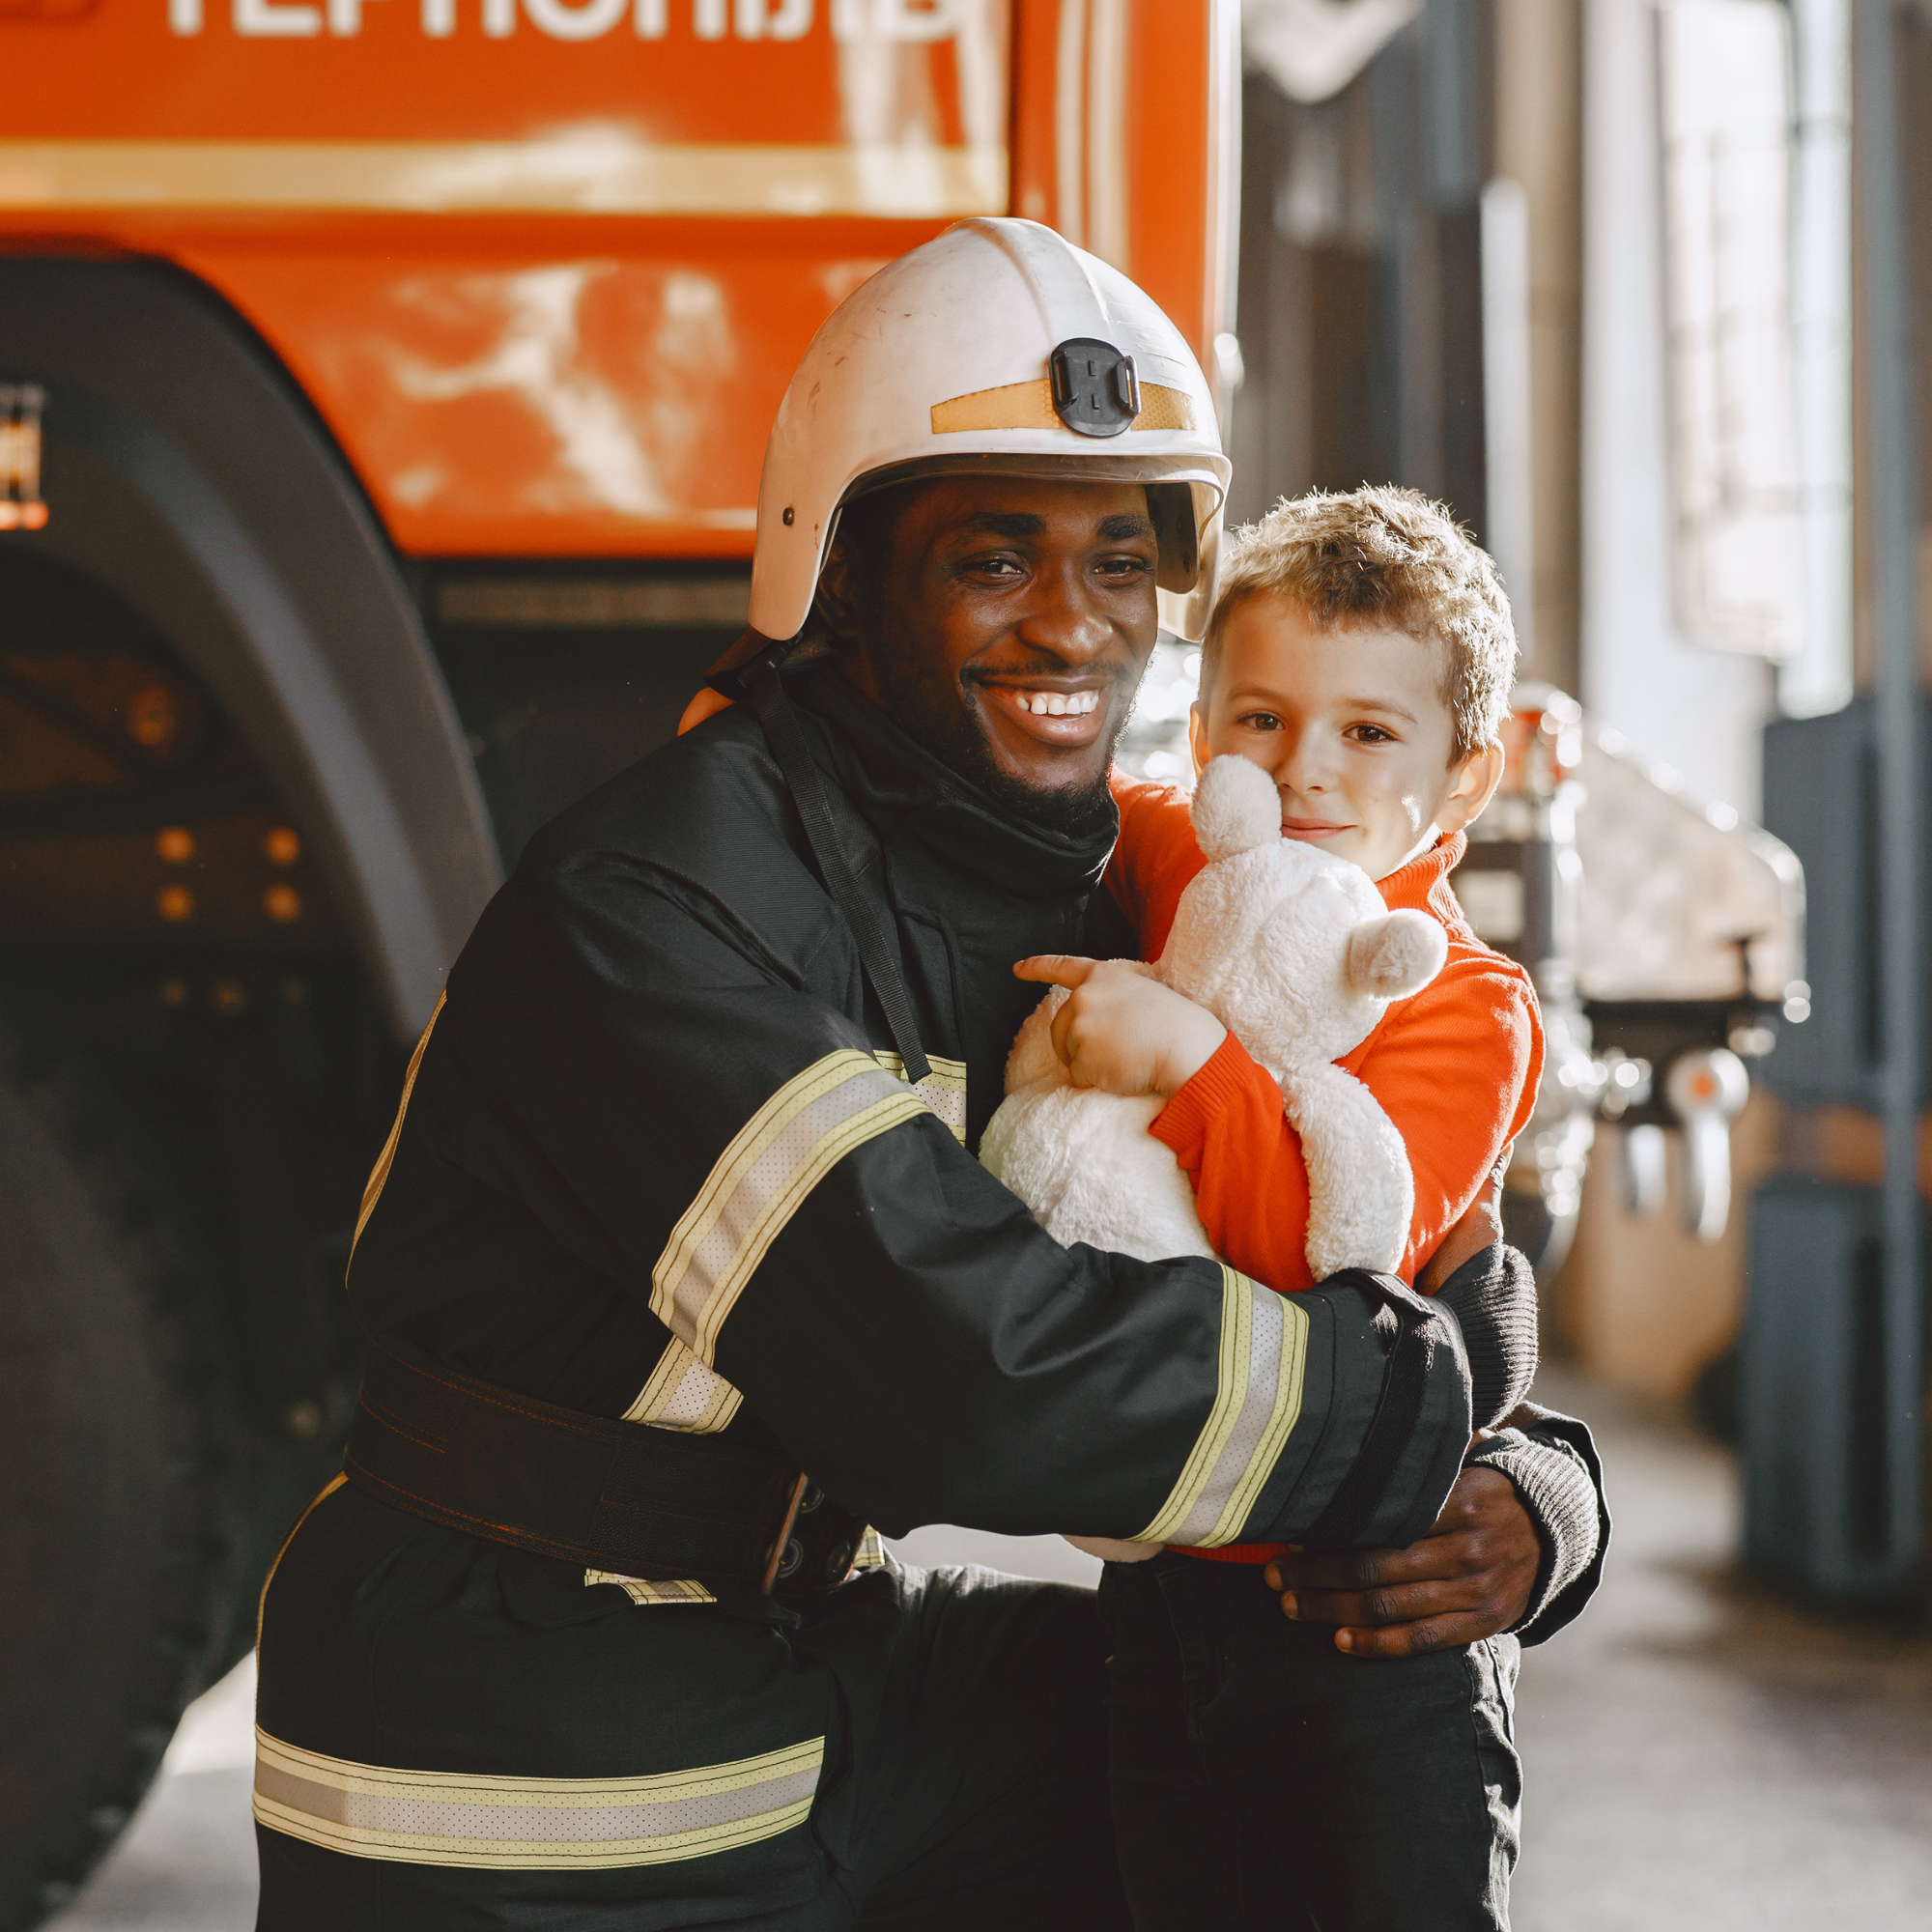 Fireman with kid 